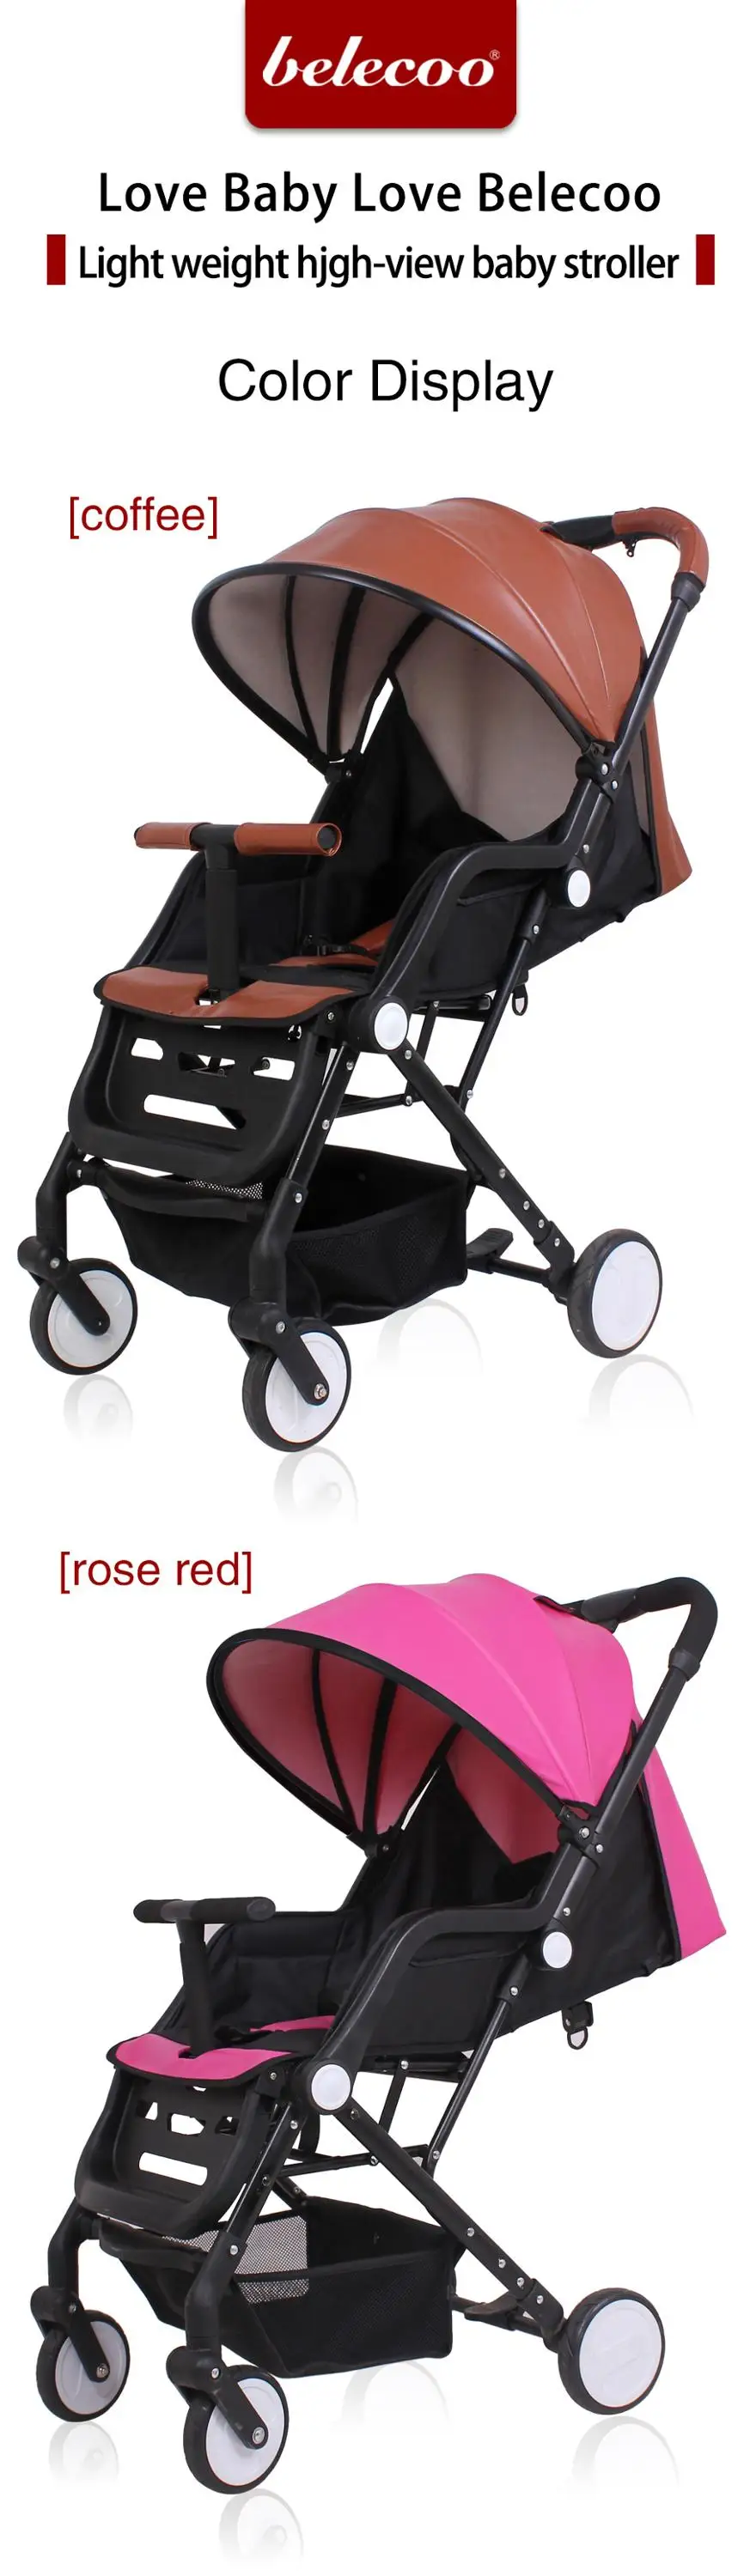 belecoo stroller rose gold